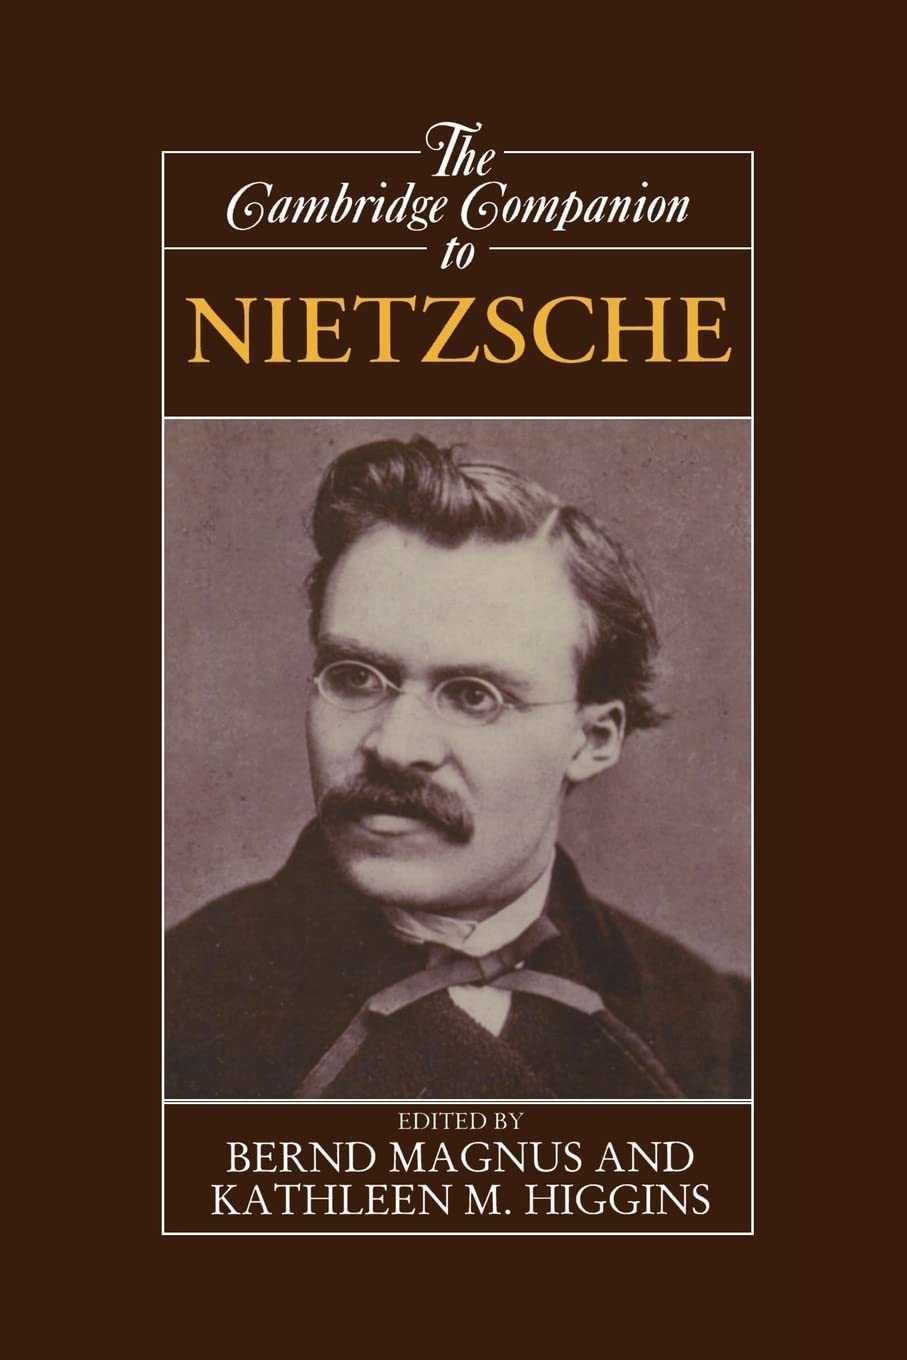 Nietzsche - Obras do autor e sobre seu pensamento